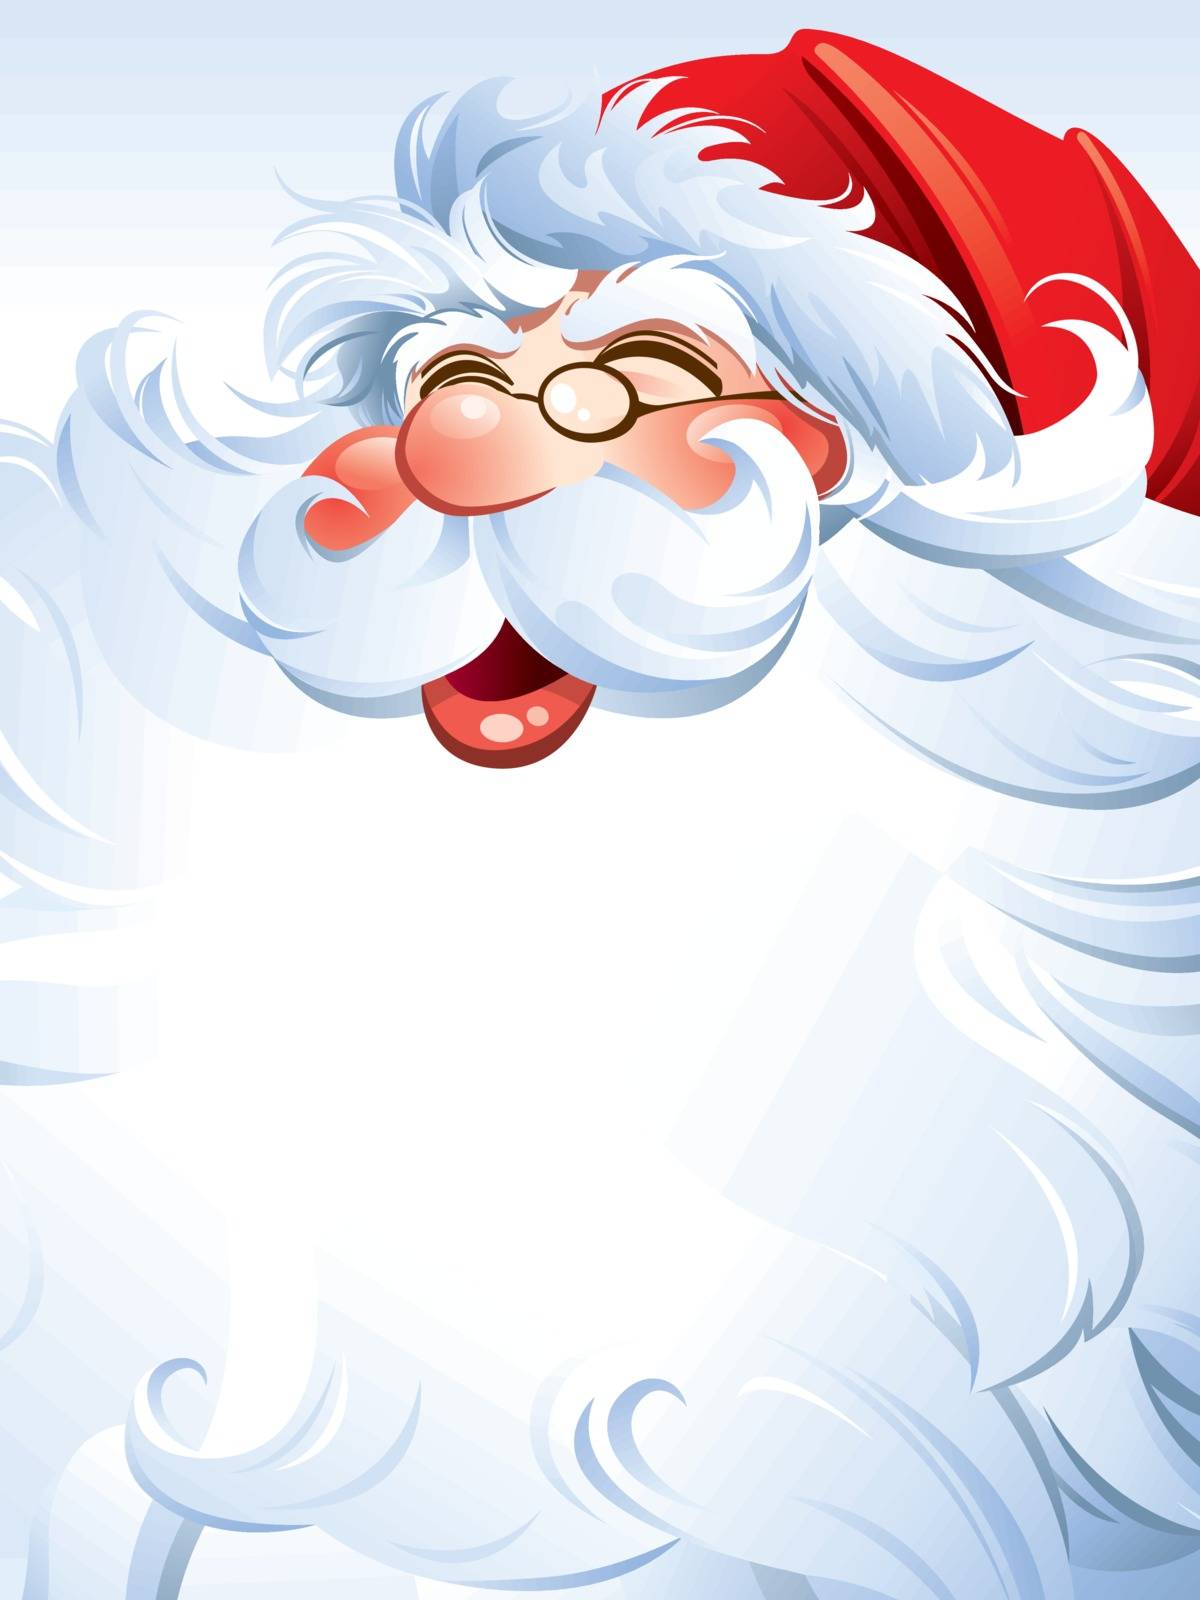 Santa Claus beard label by ori-artiste